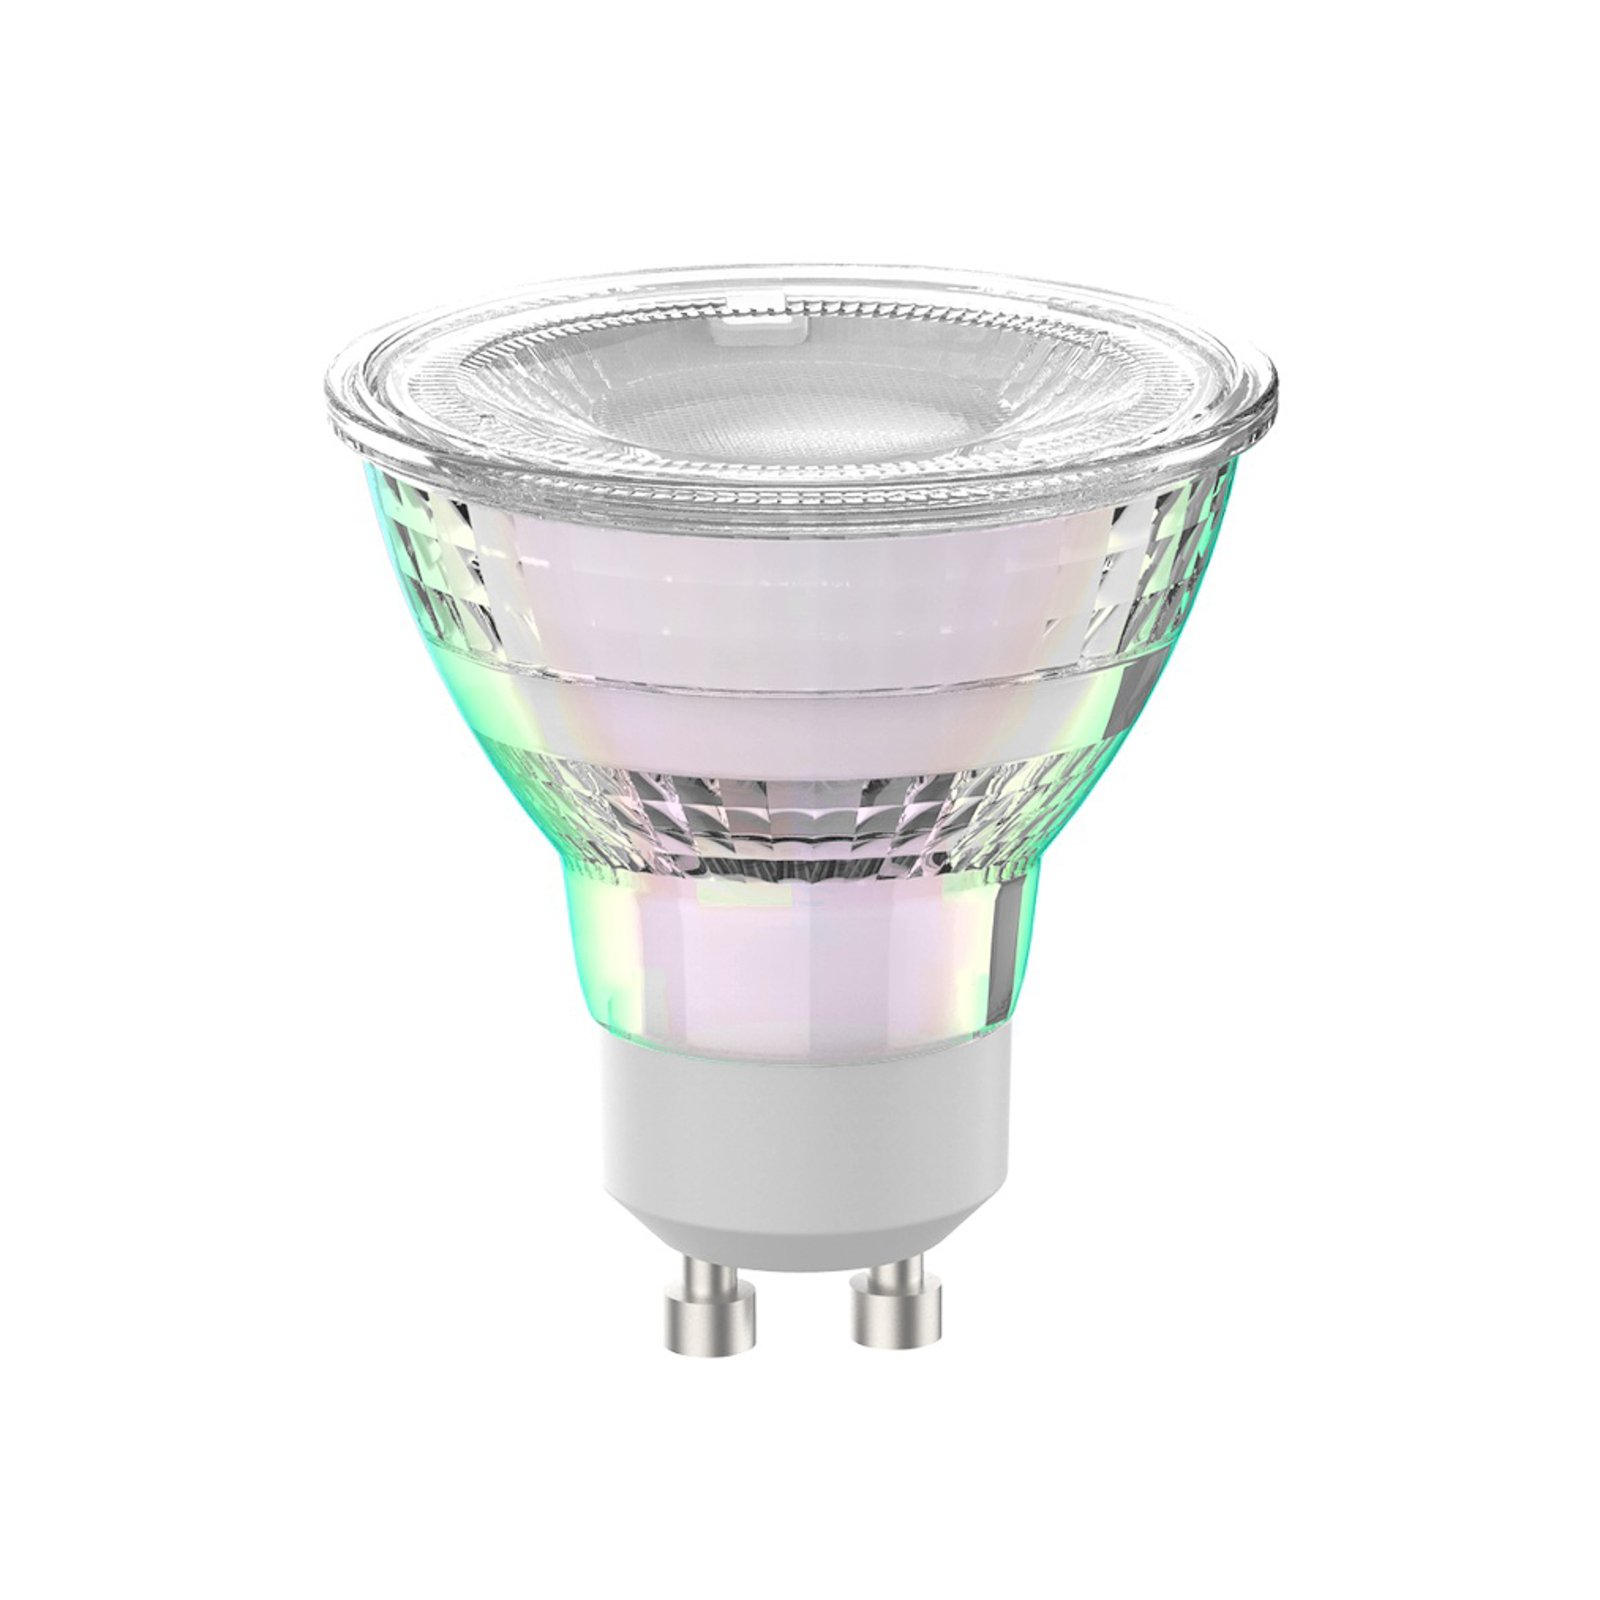 Arcchio ampoule LED GU10 2,5W 6500K 450lm verre set de 2 pièces